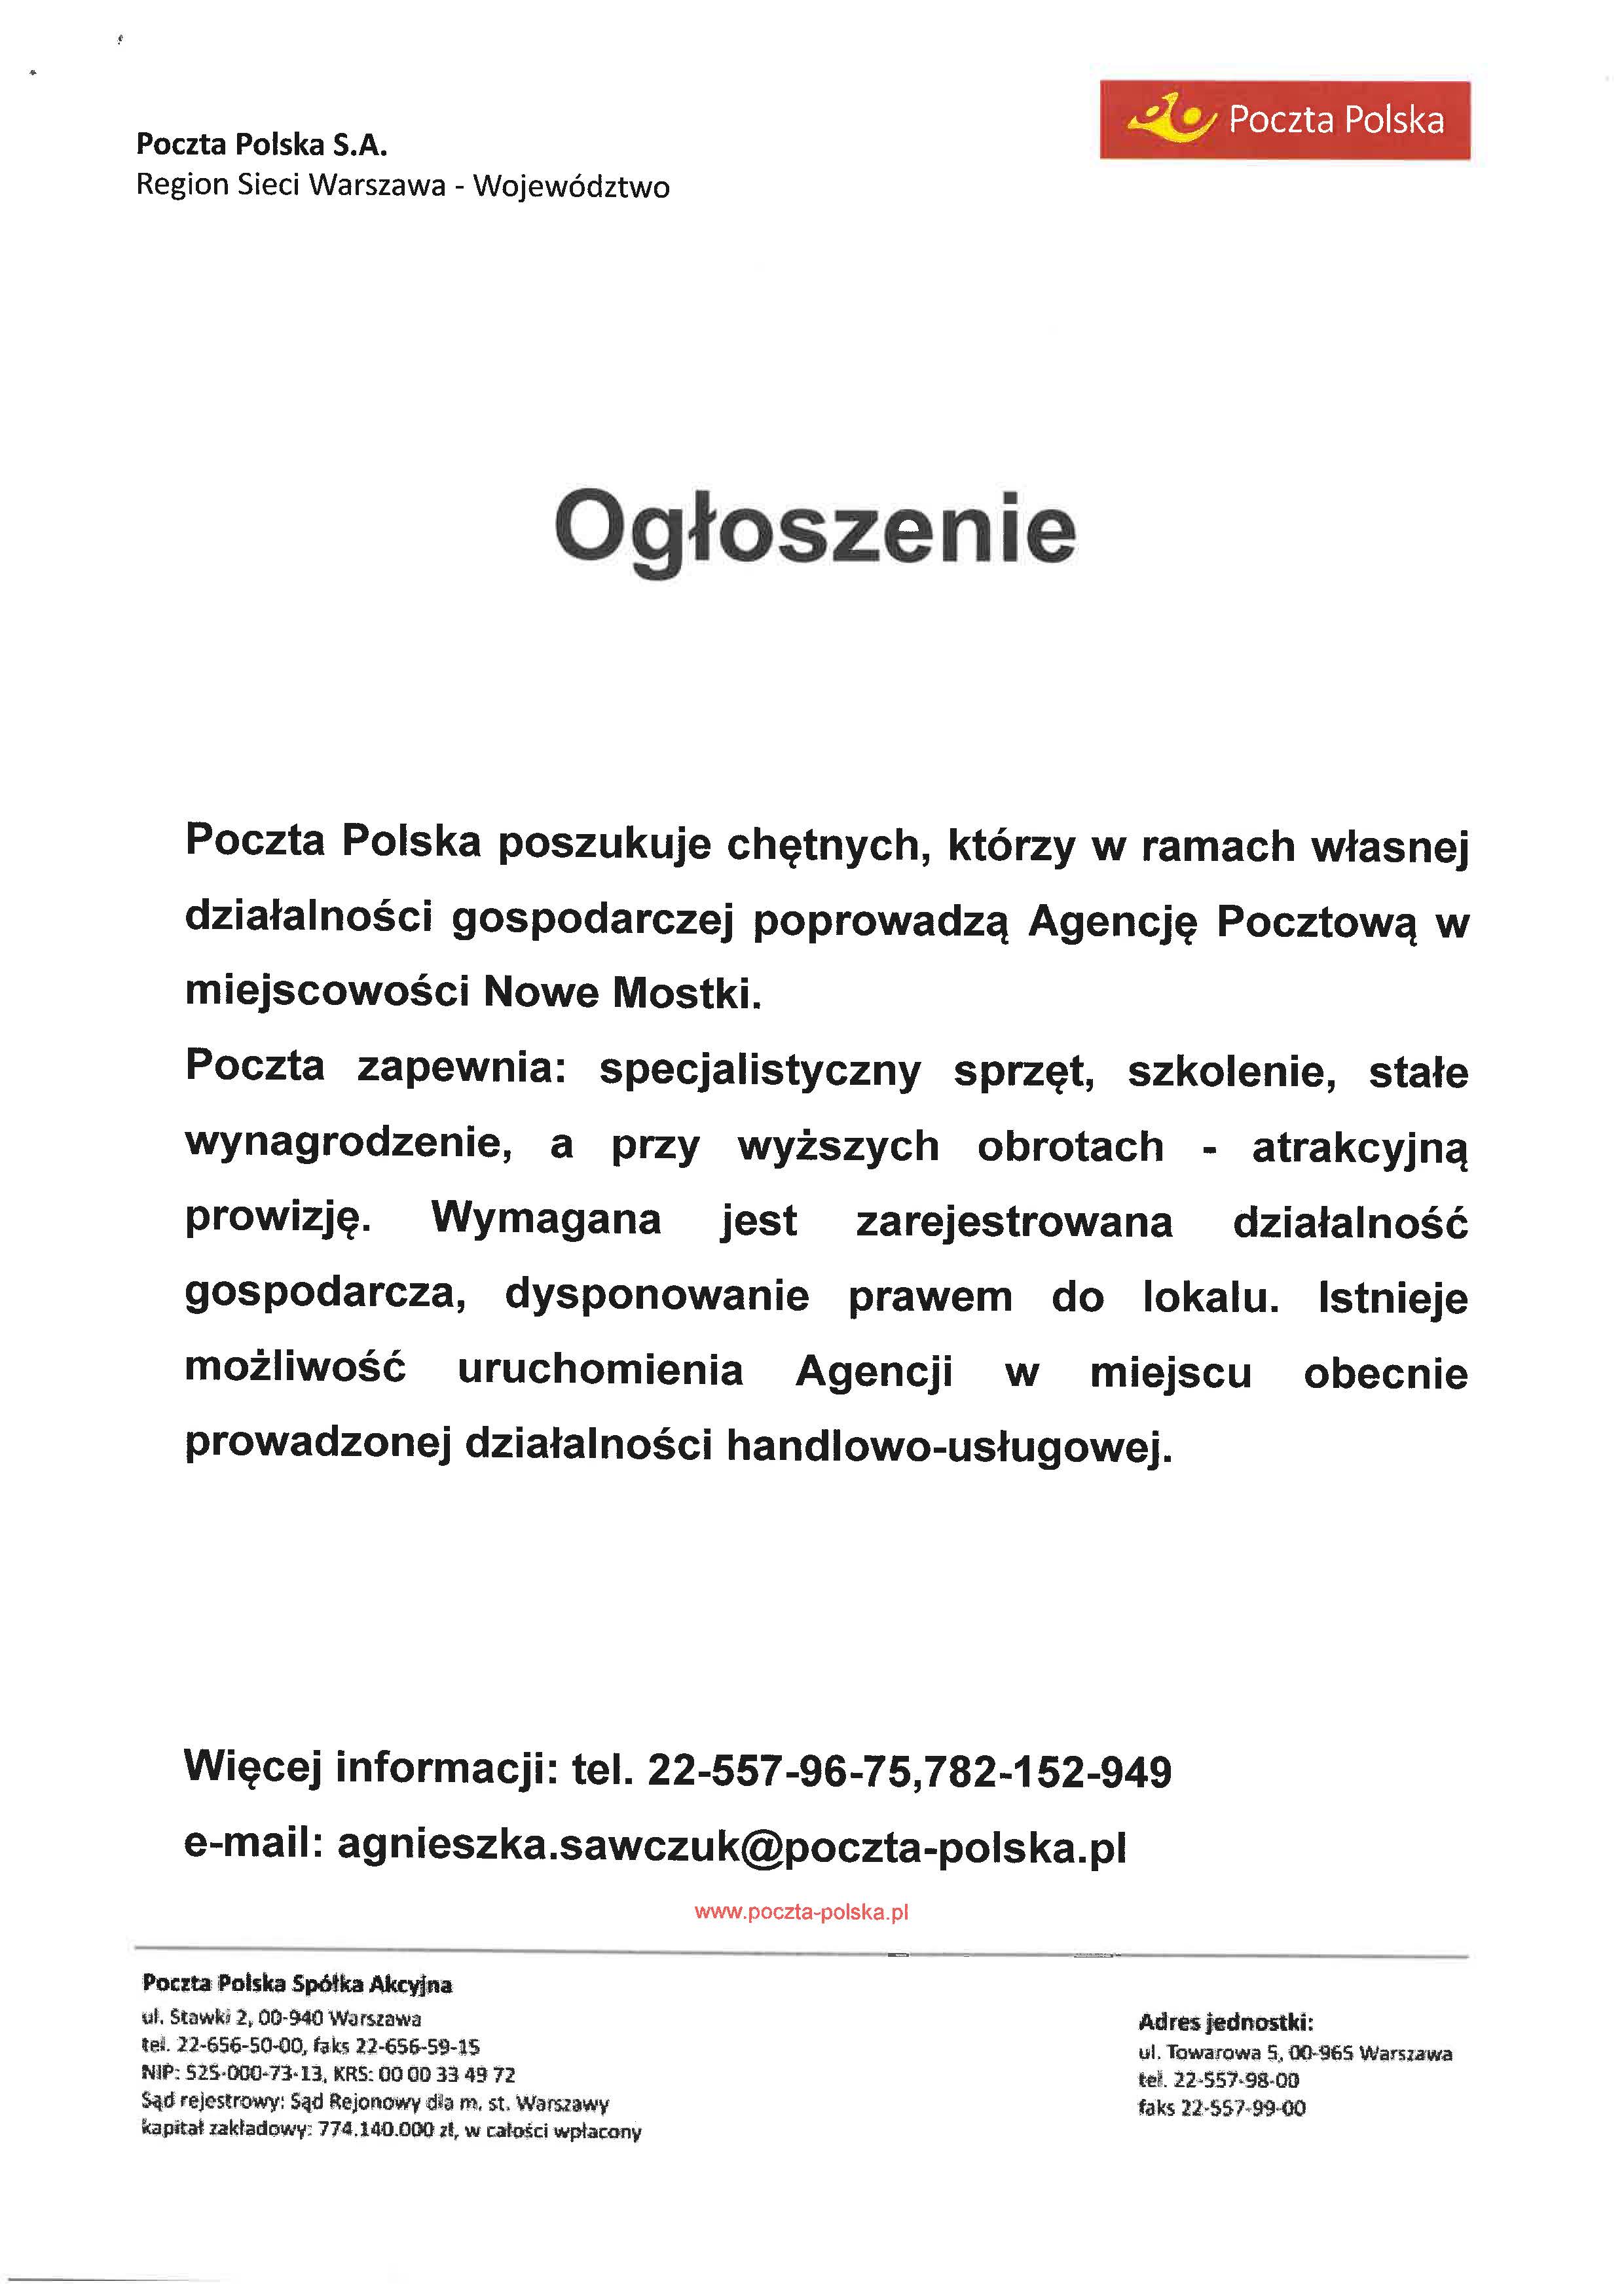 Ogłoszenie poczta polska